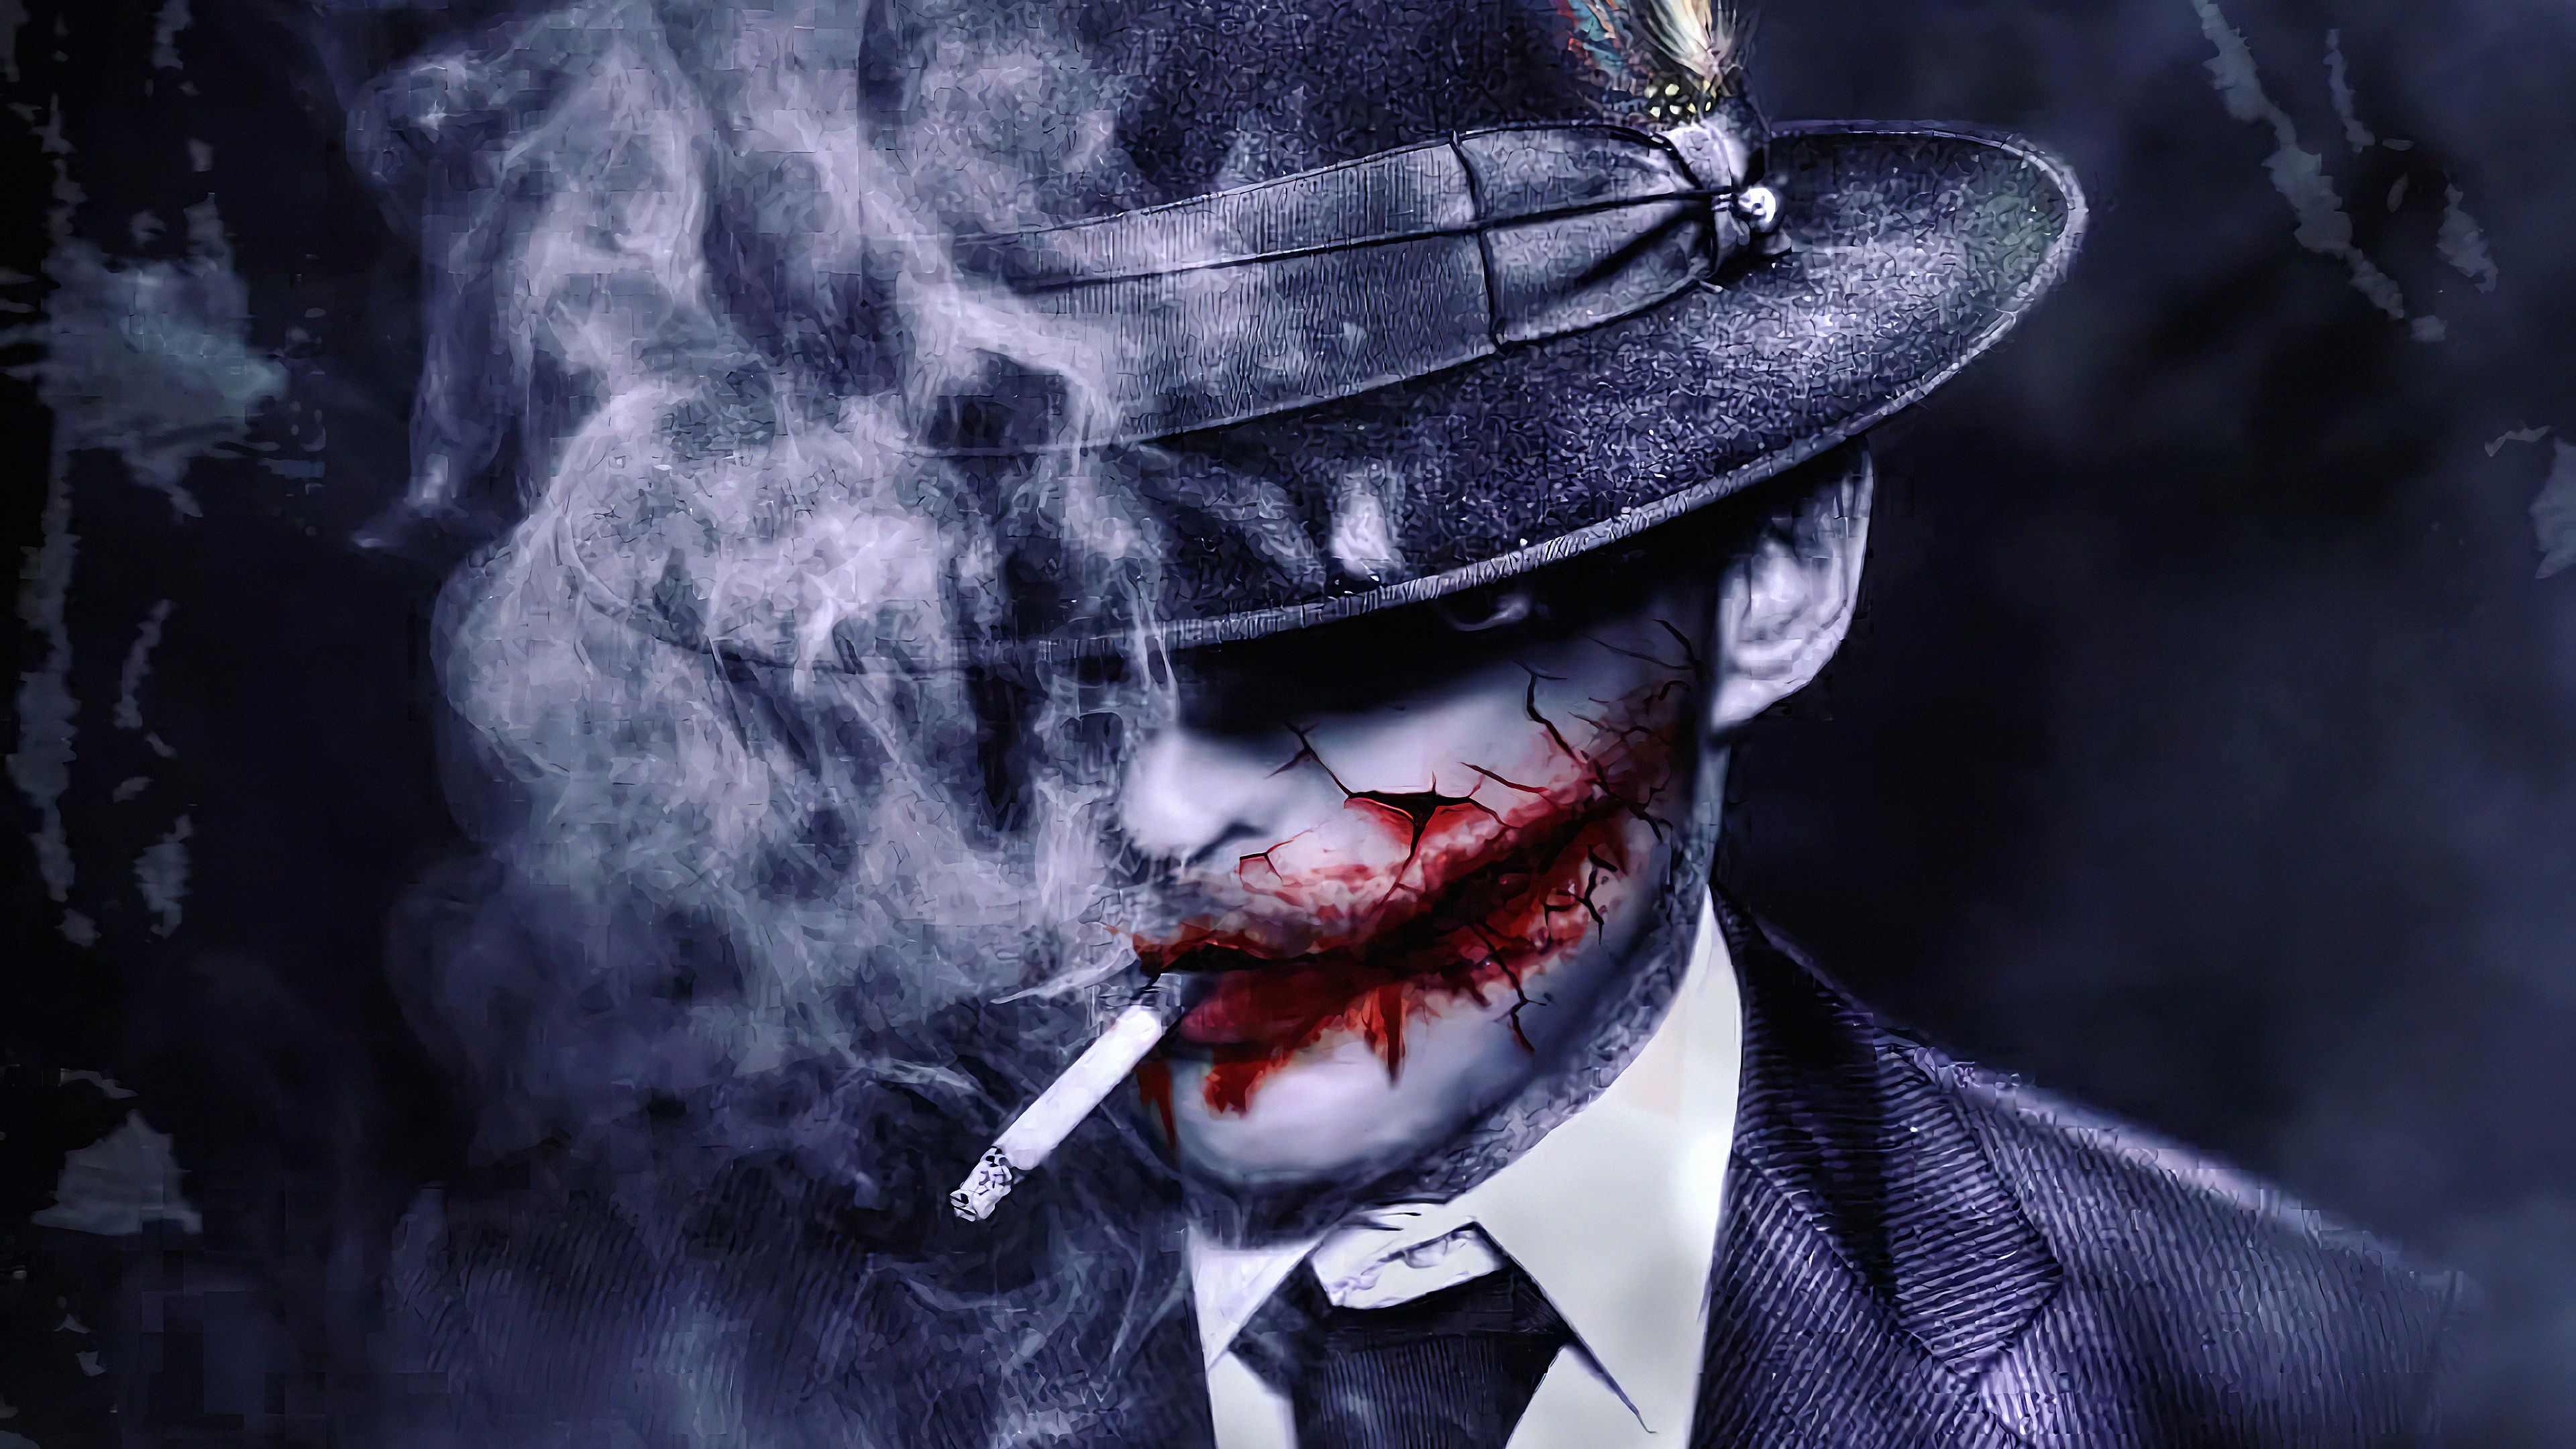 Joker Dark Smoker - Joker Smoking Wallpaper Hd - 3840x2160 Wallpaper -  